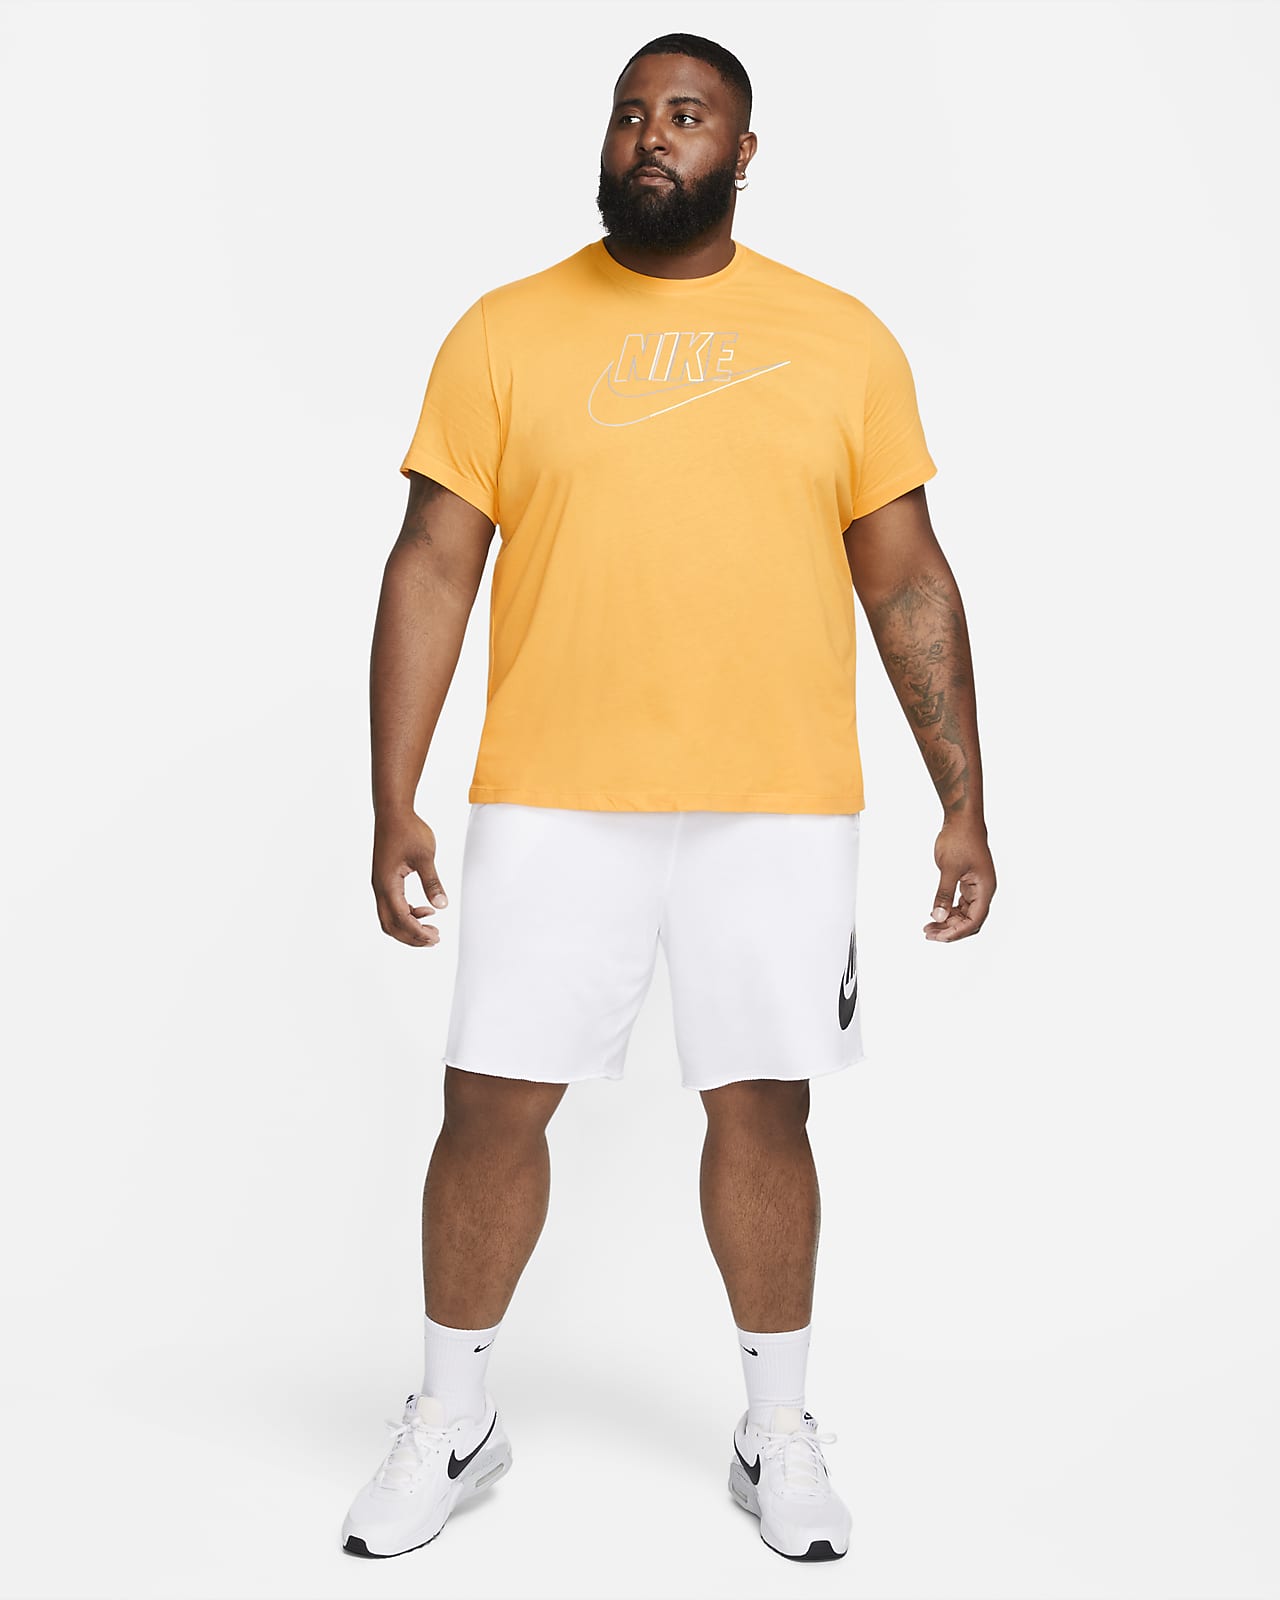 Nike Sportswear Men's T-Shirt. 